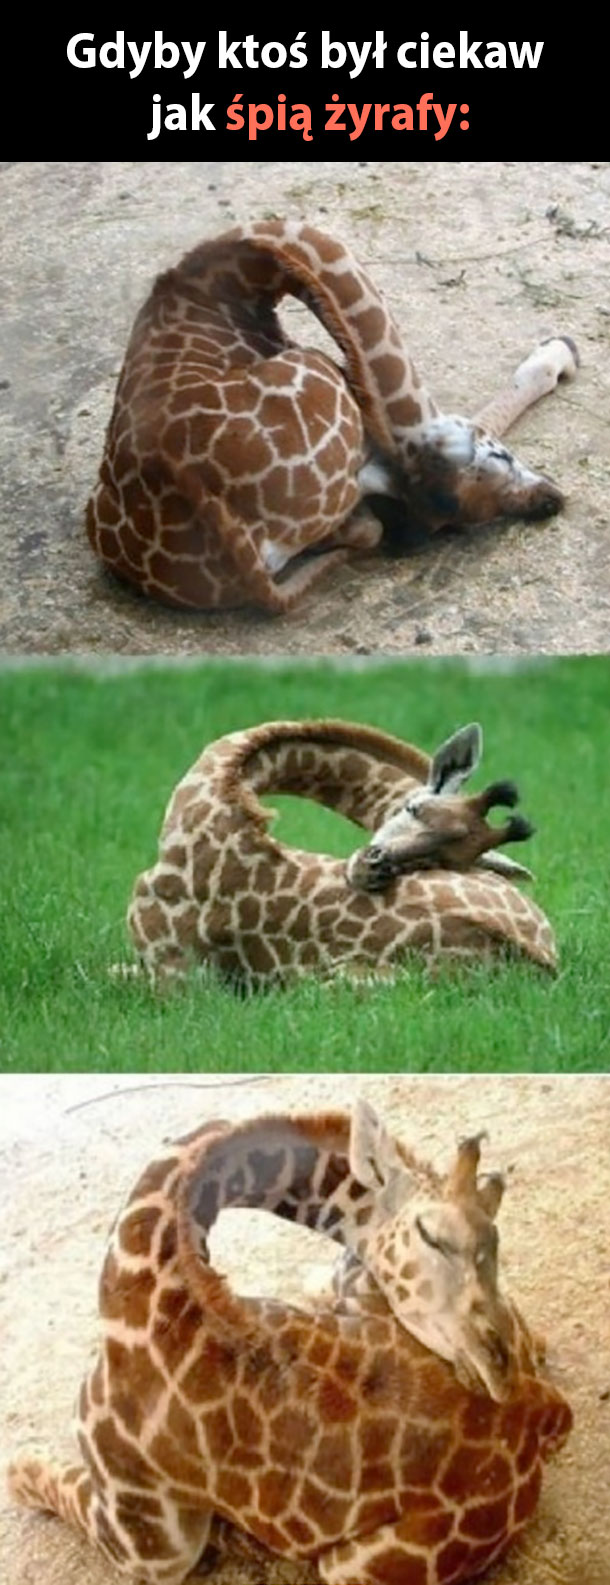 Tak śpią żyrafy 